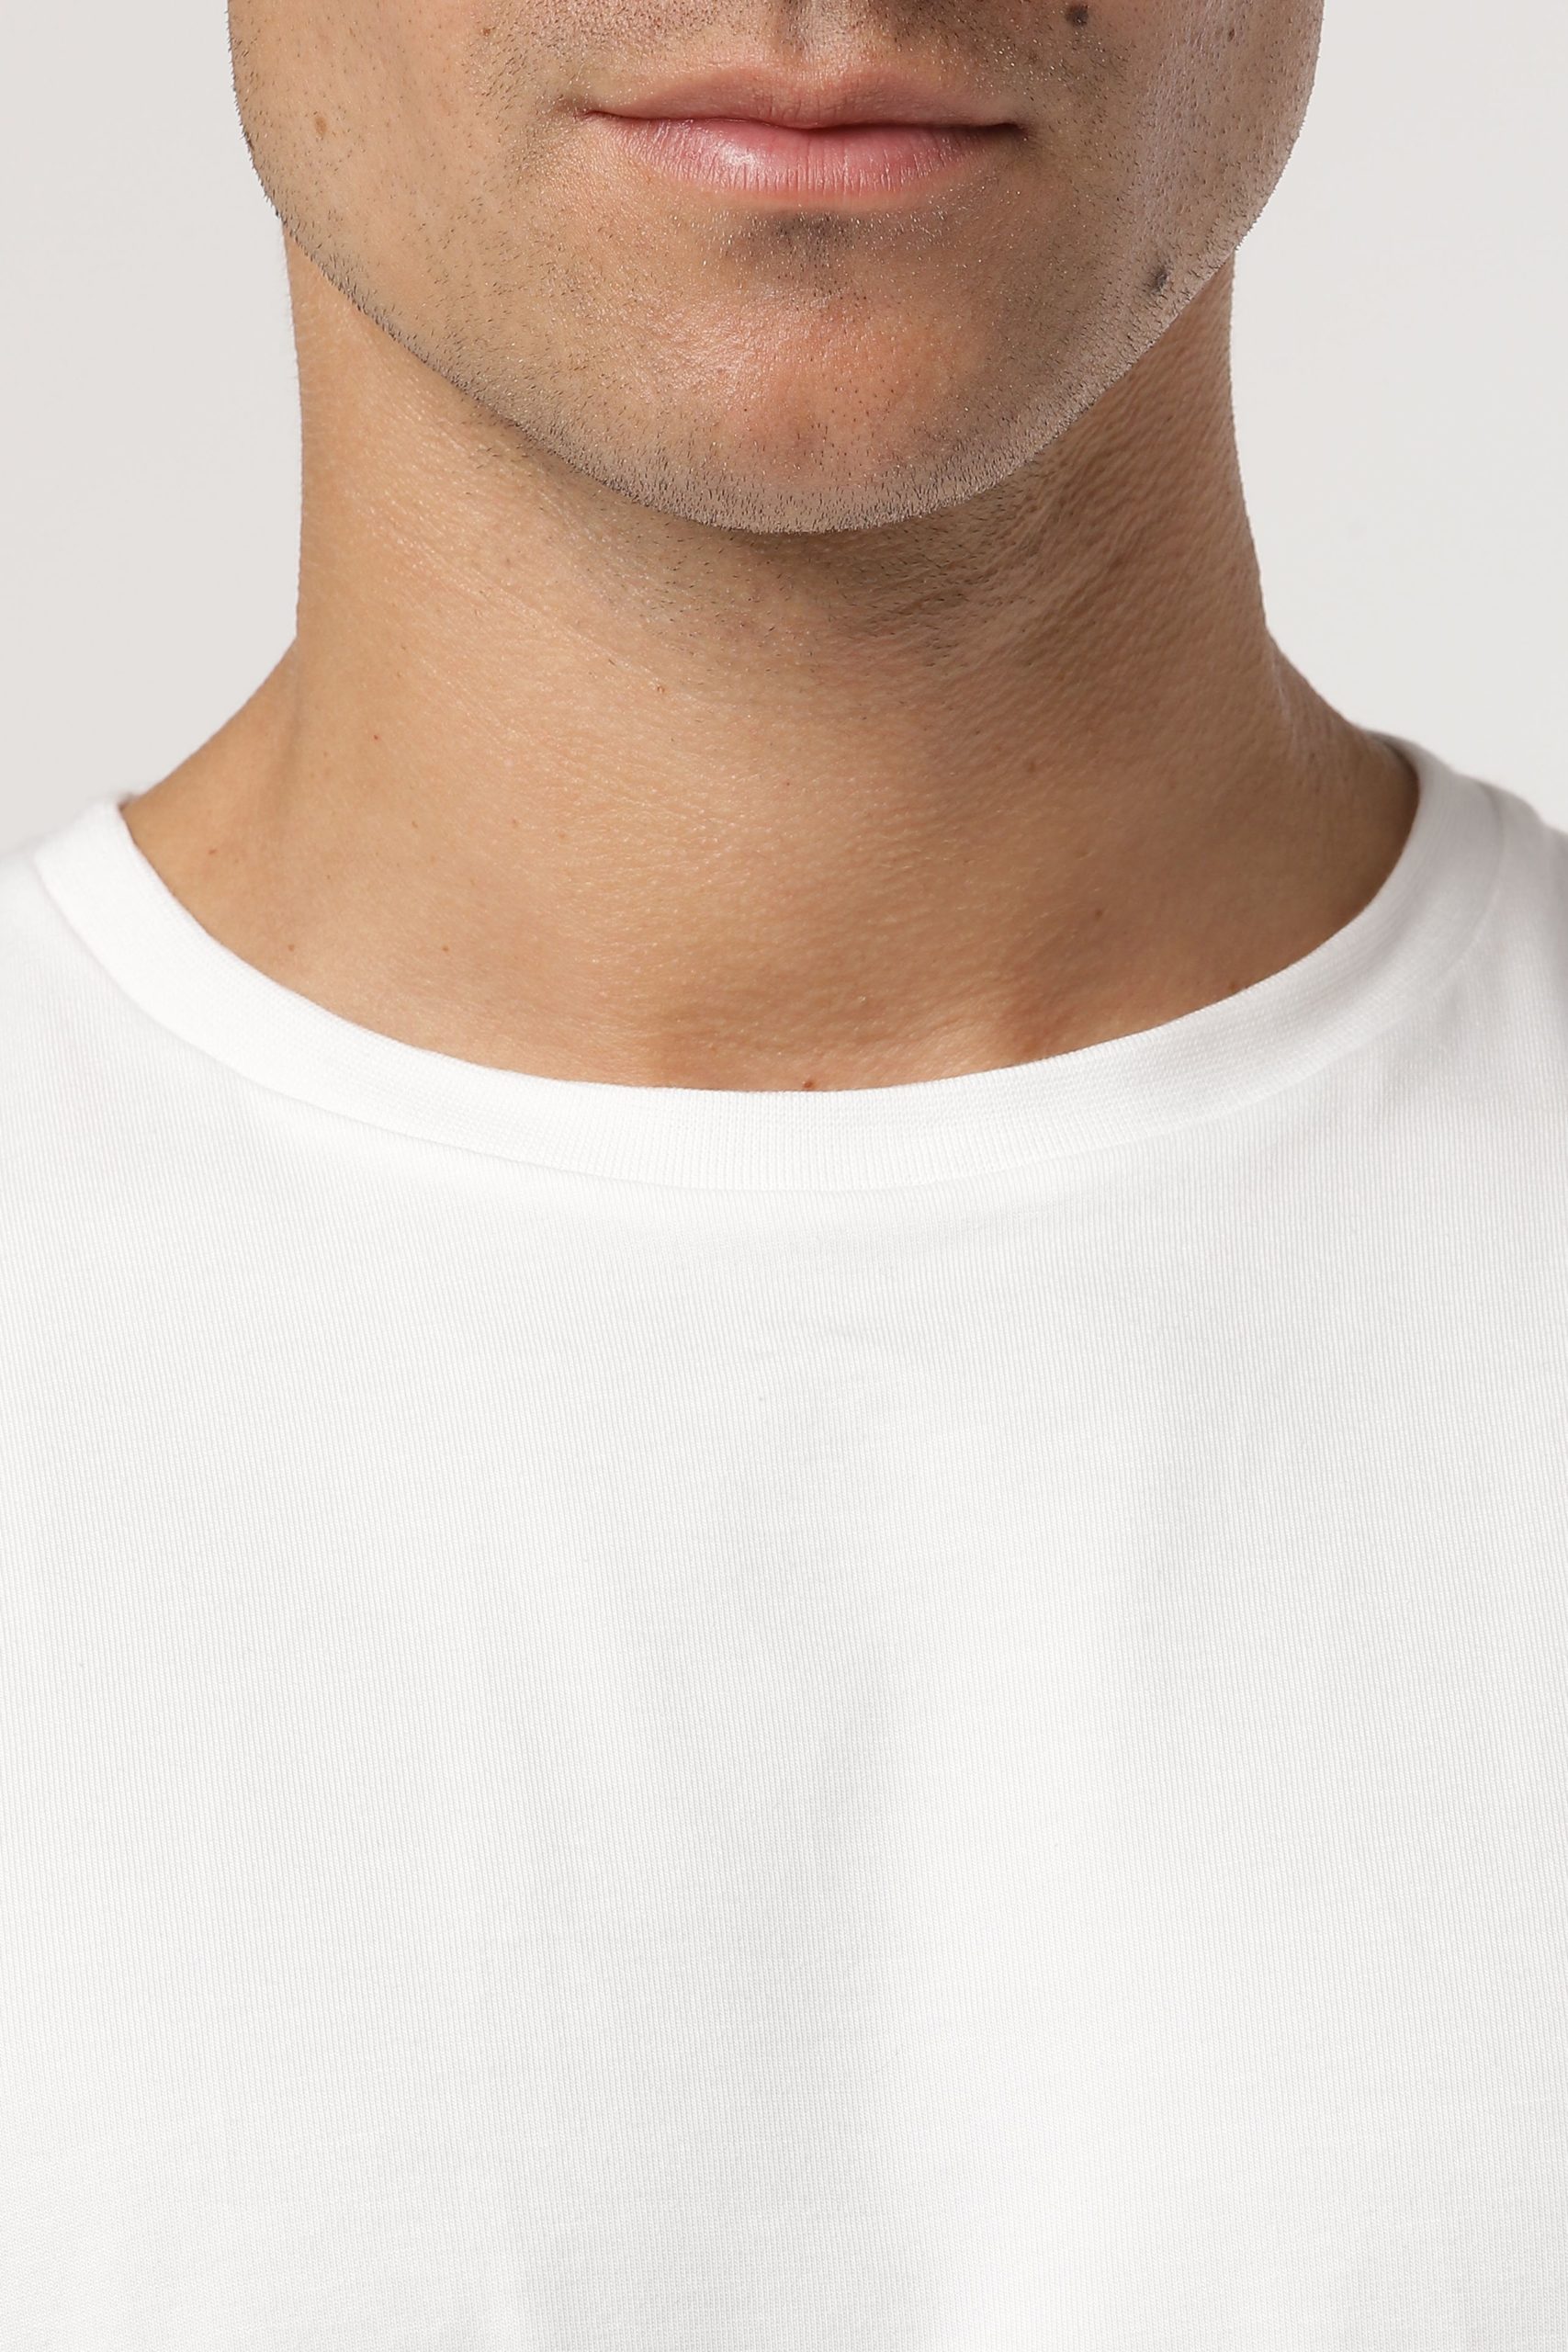 QT9 white collar